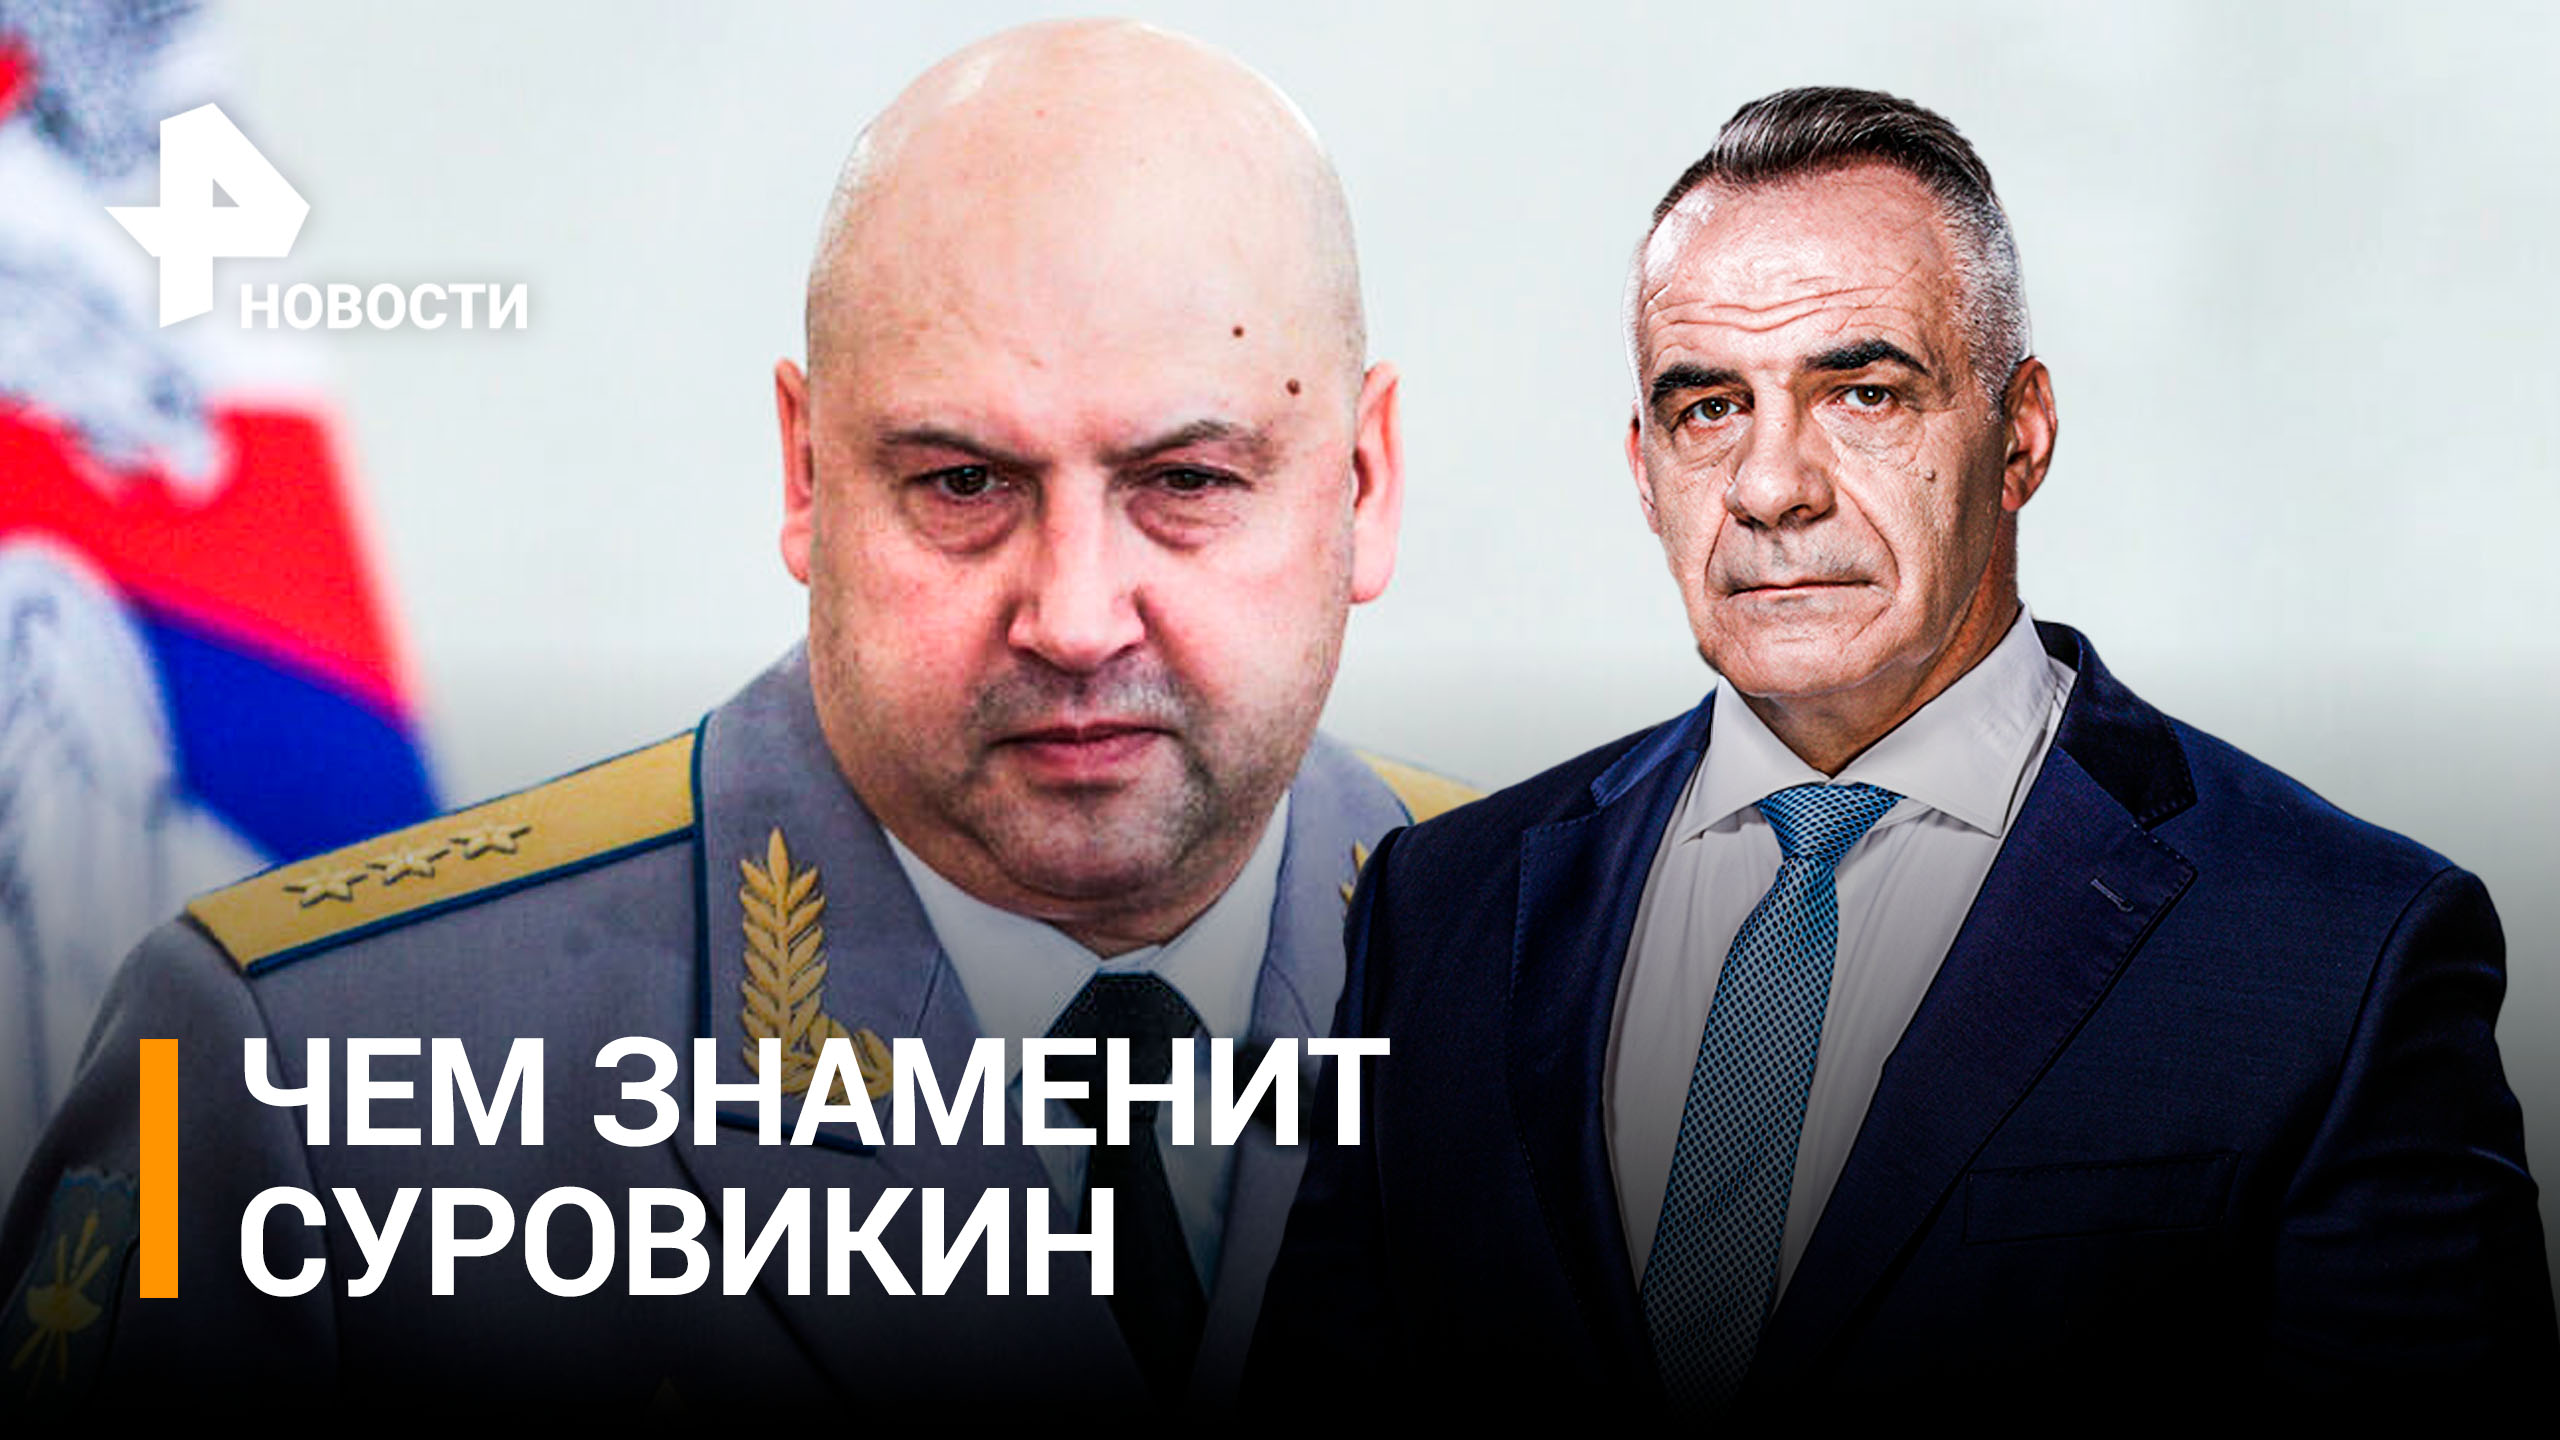 Что известно о новом командующим спецоперацией генерале Суровикине / Итоги с Петром Марченко